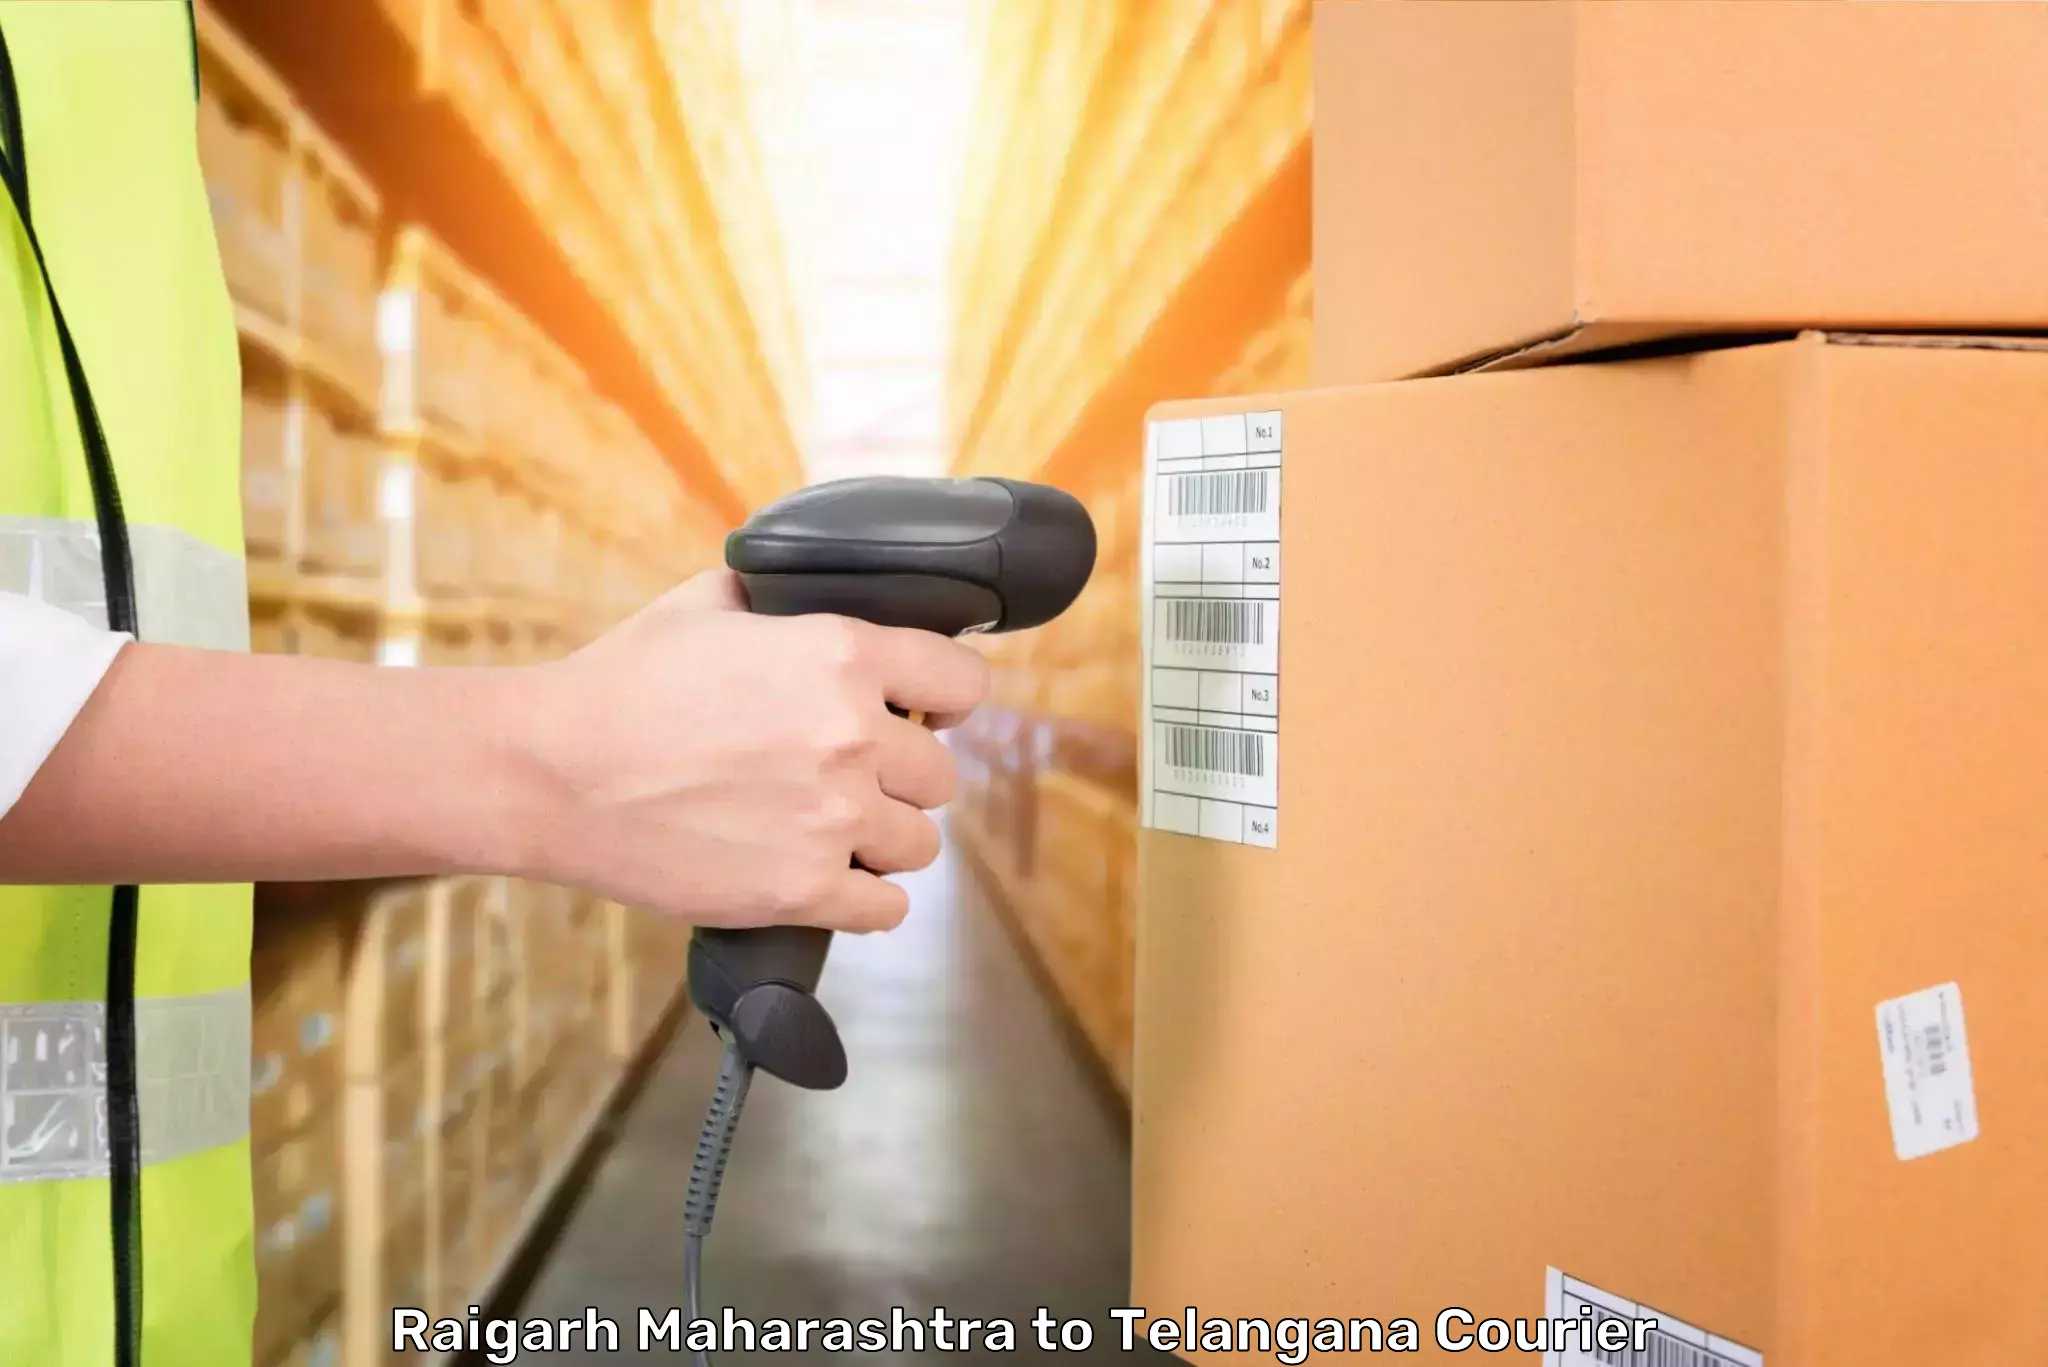 Luggage transport operations Raigarh Maharashtra to Adilabad